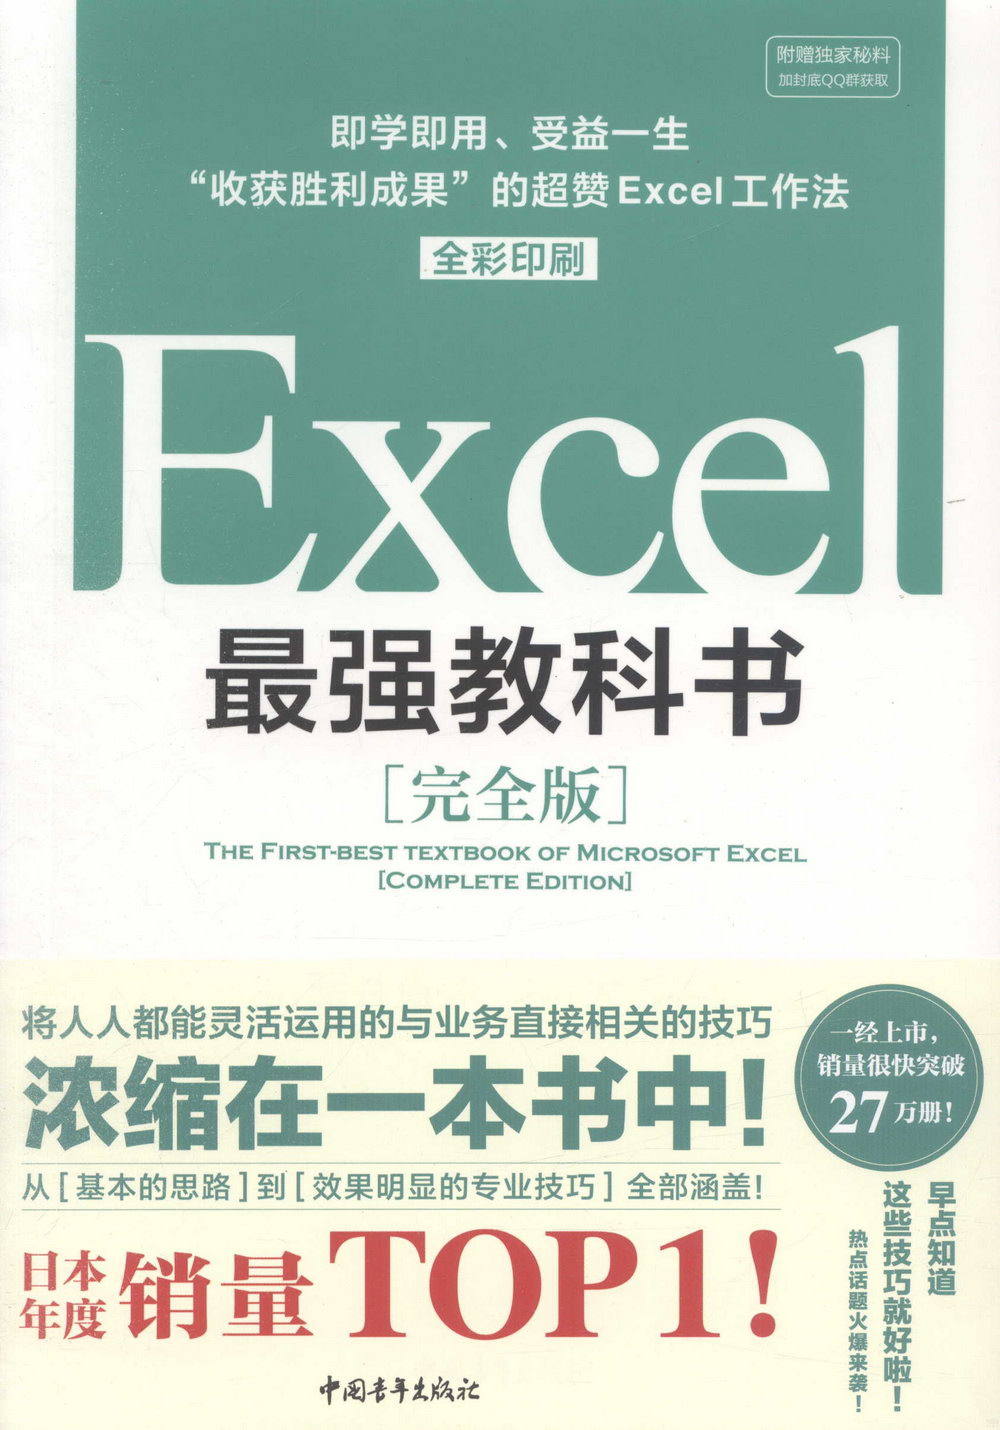 Excel最強教科書·完全版：即學即用、受益一生，「收穫勝利成果」的超贊Excel工作法（全彩印刷）